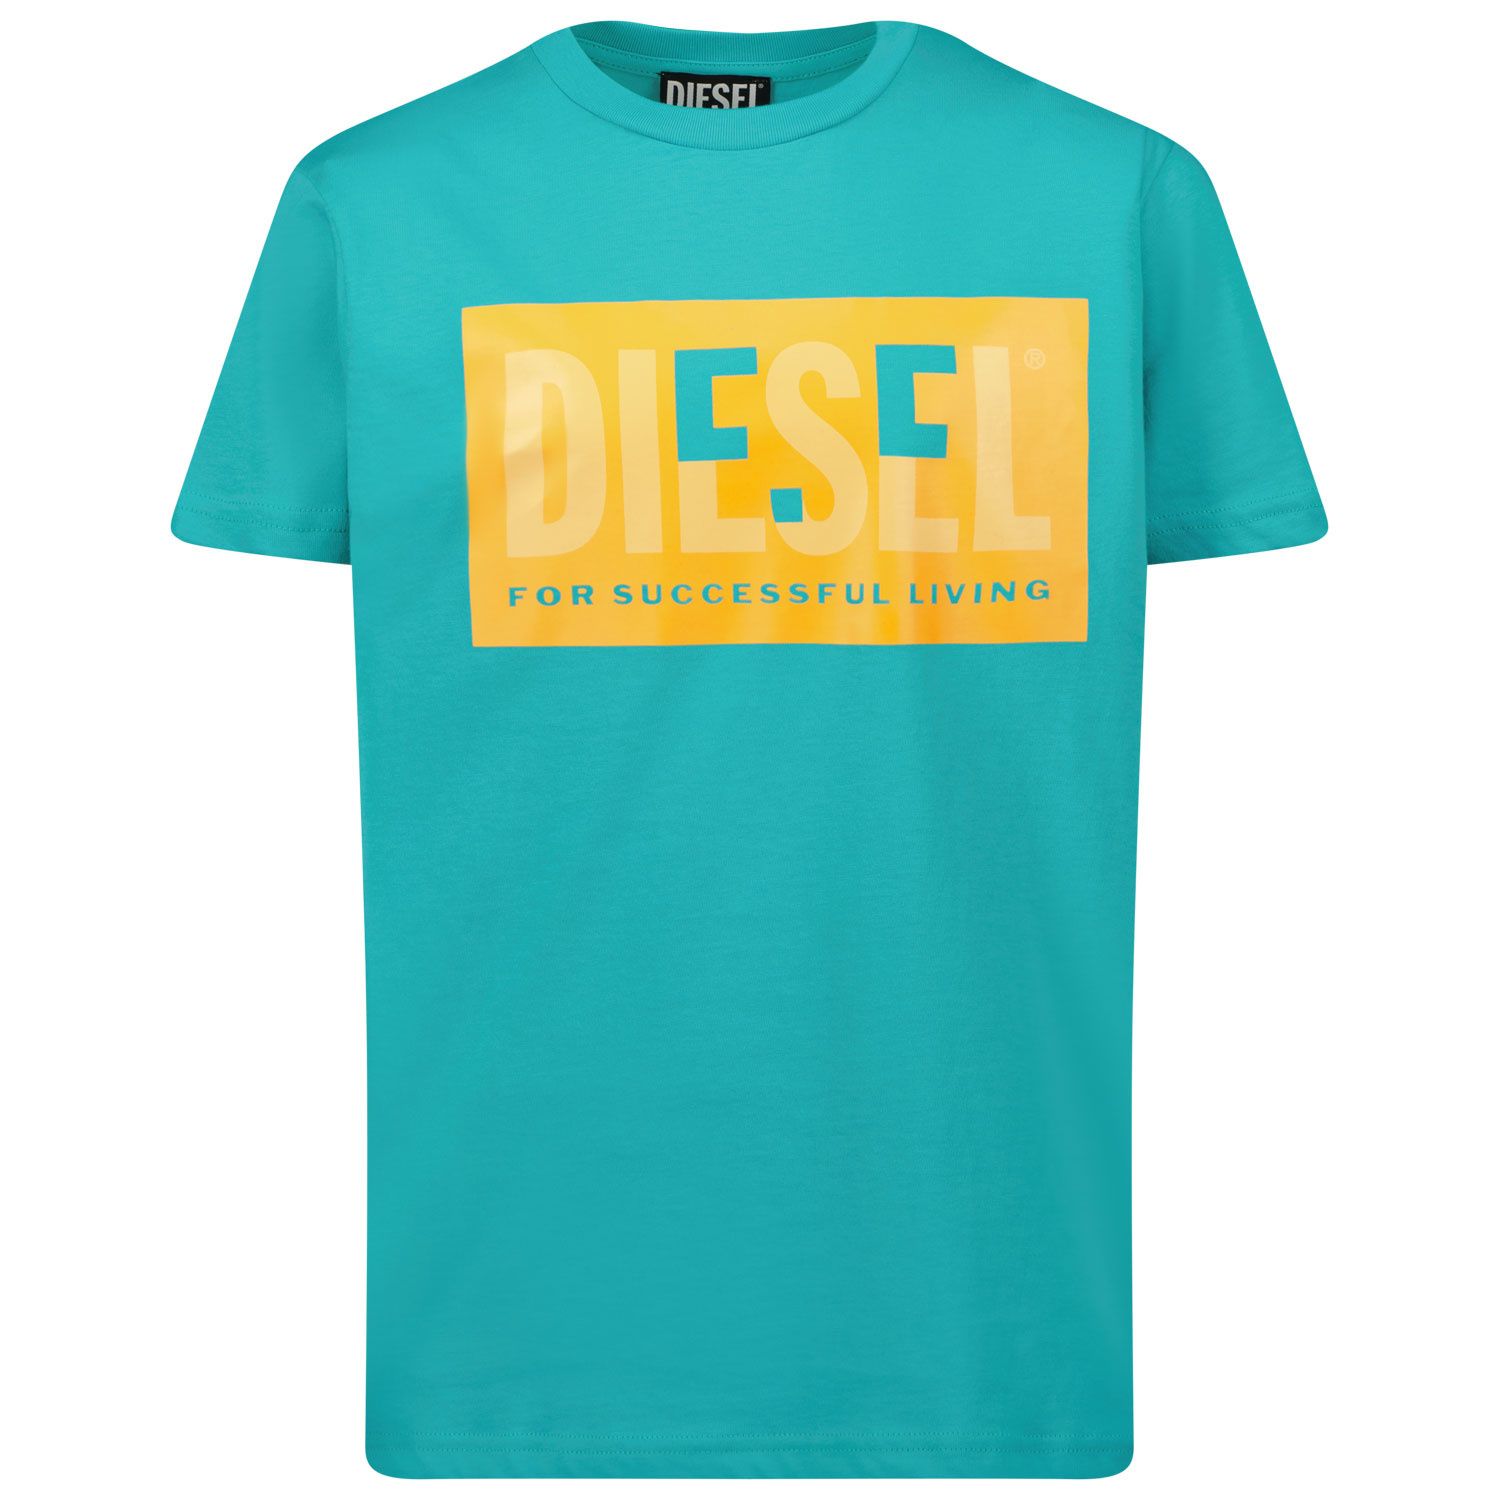 Afbeelding van Diesel J00581 kinder t-shirt turquoise